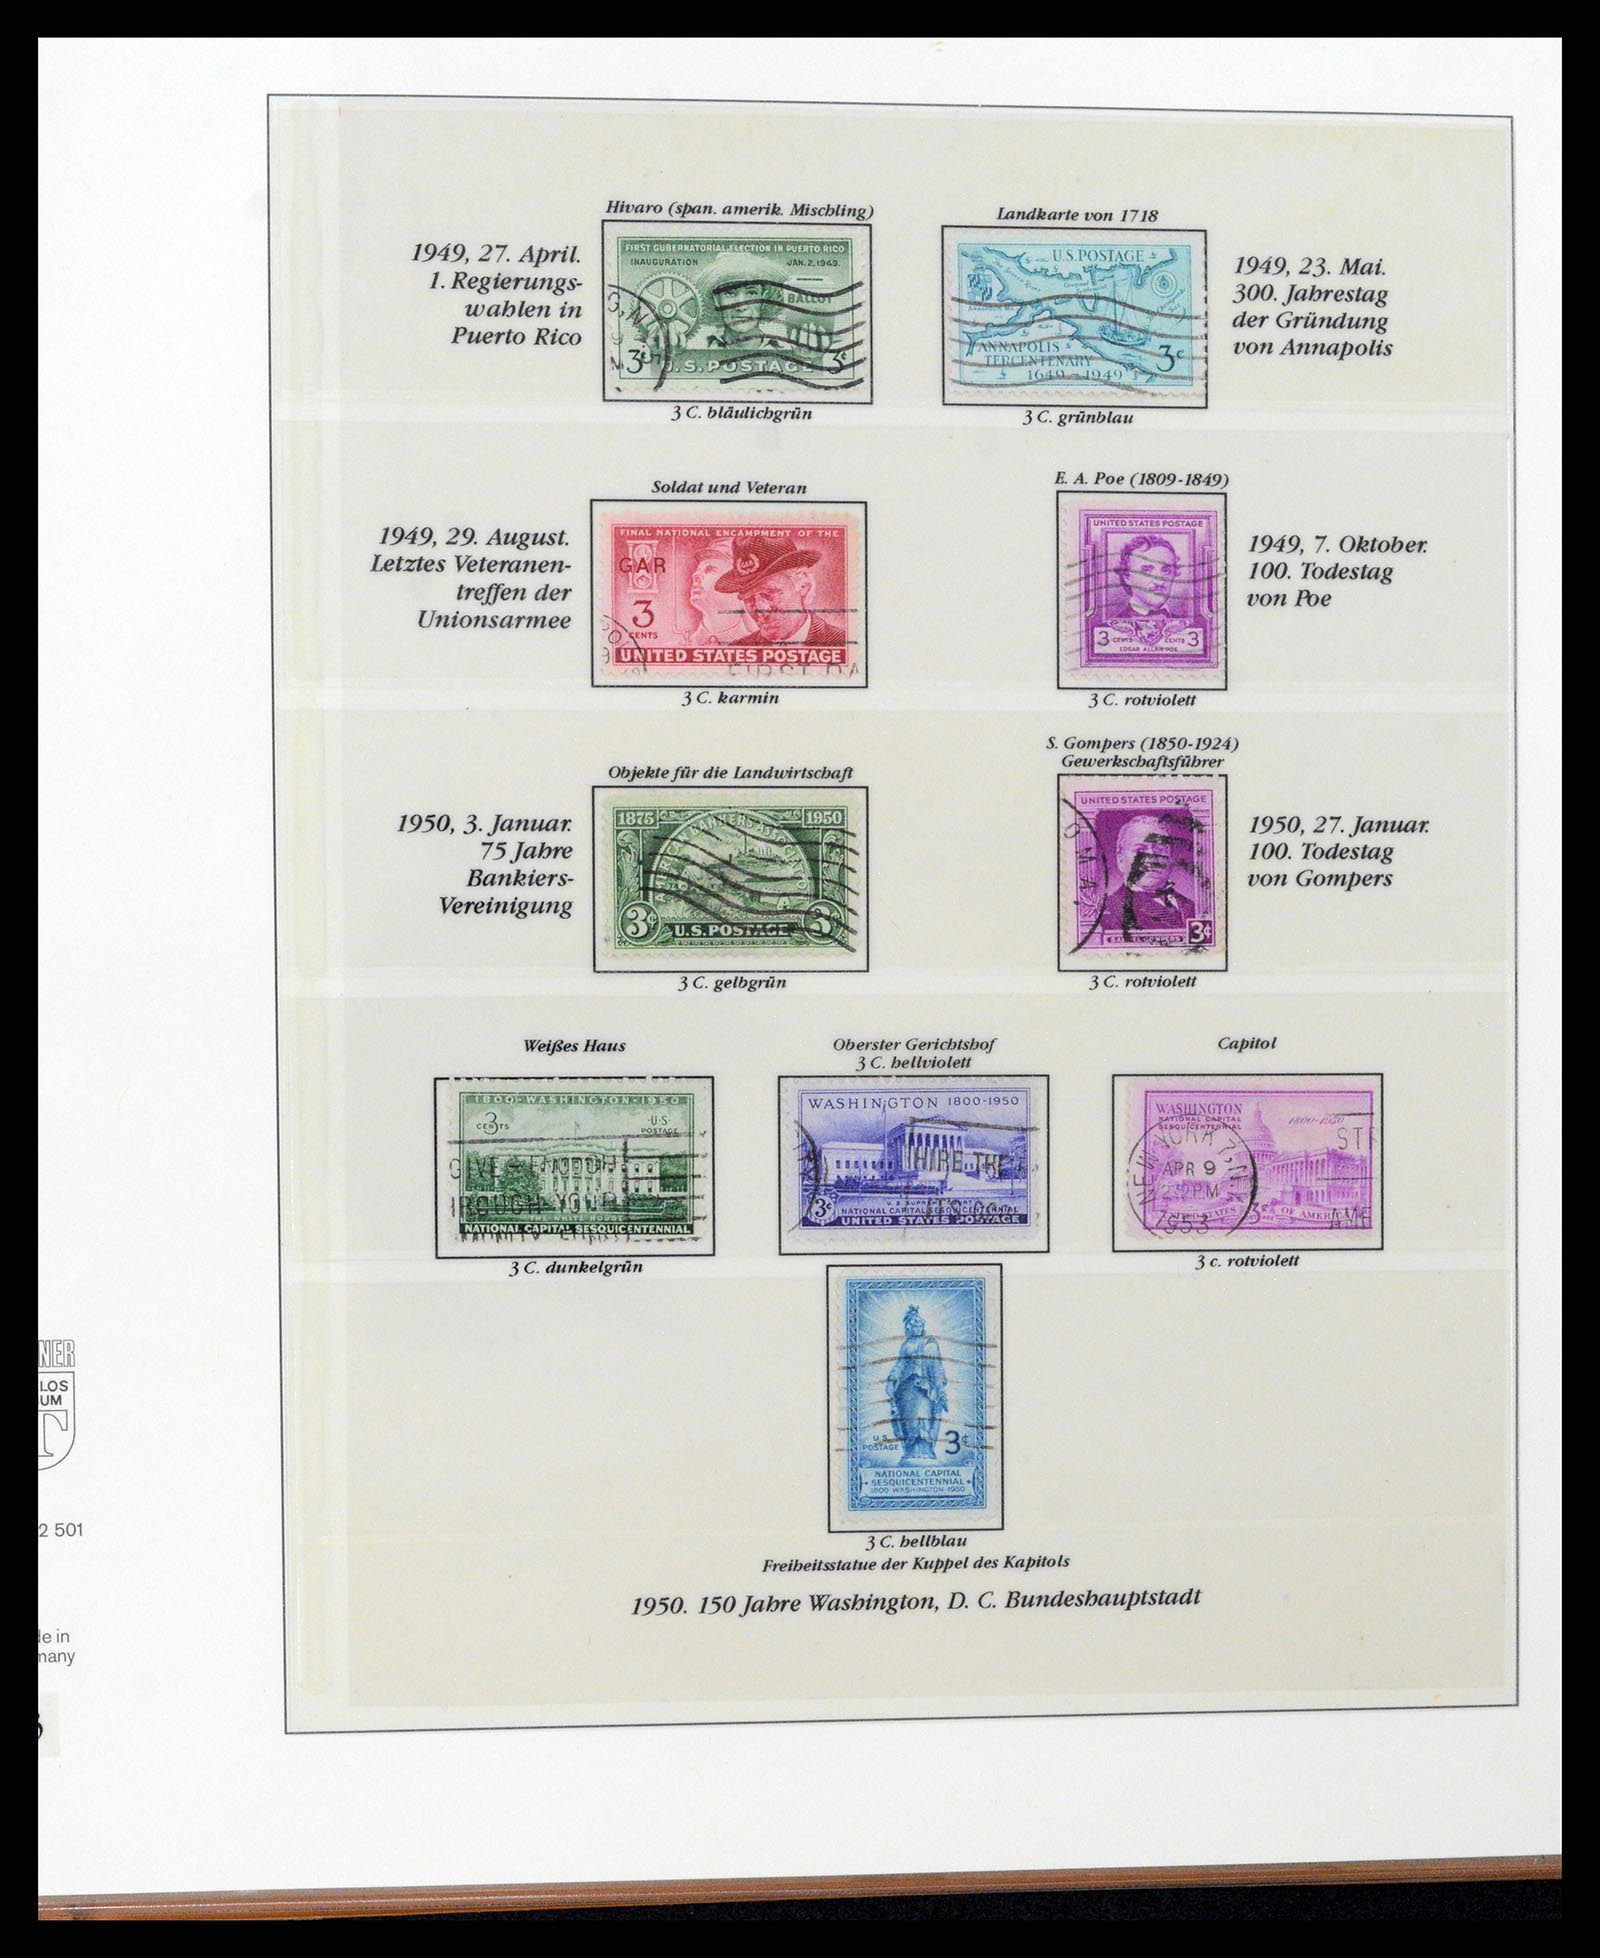 37653 120 - Stamp collection 37653 USA 1870-1954.